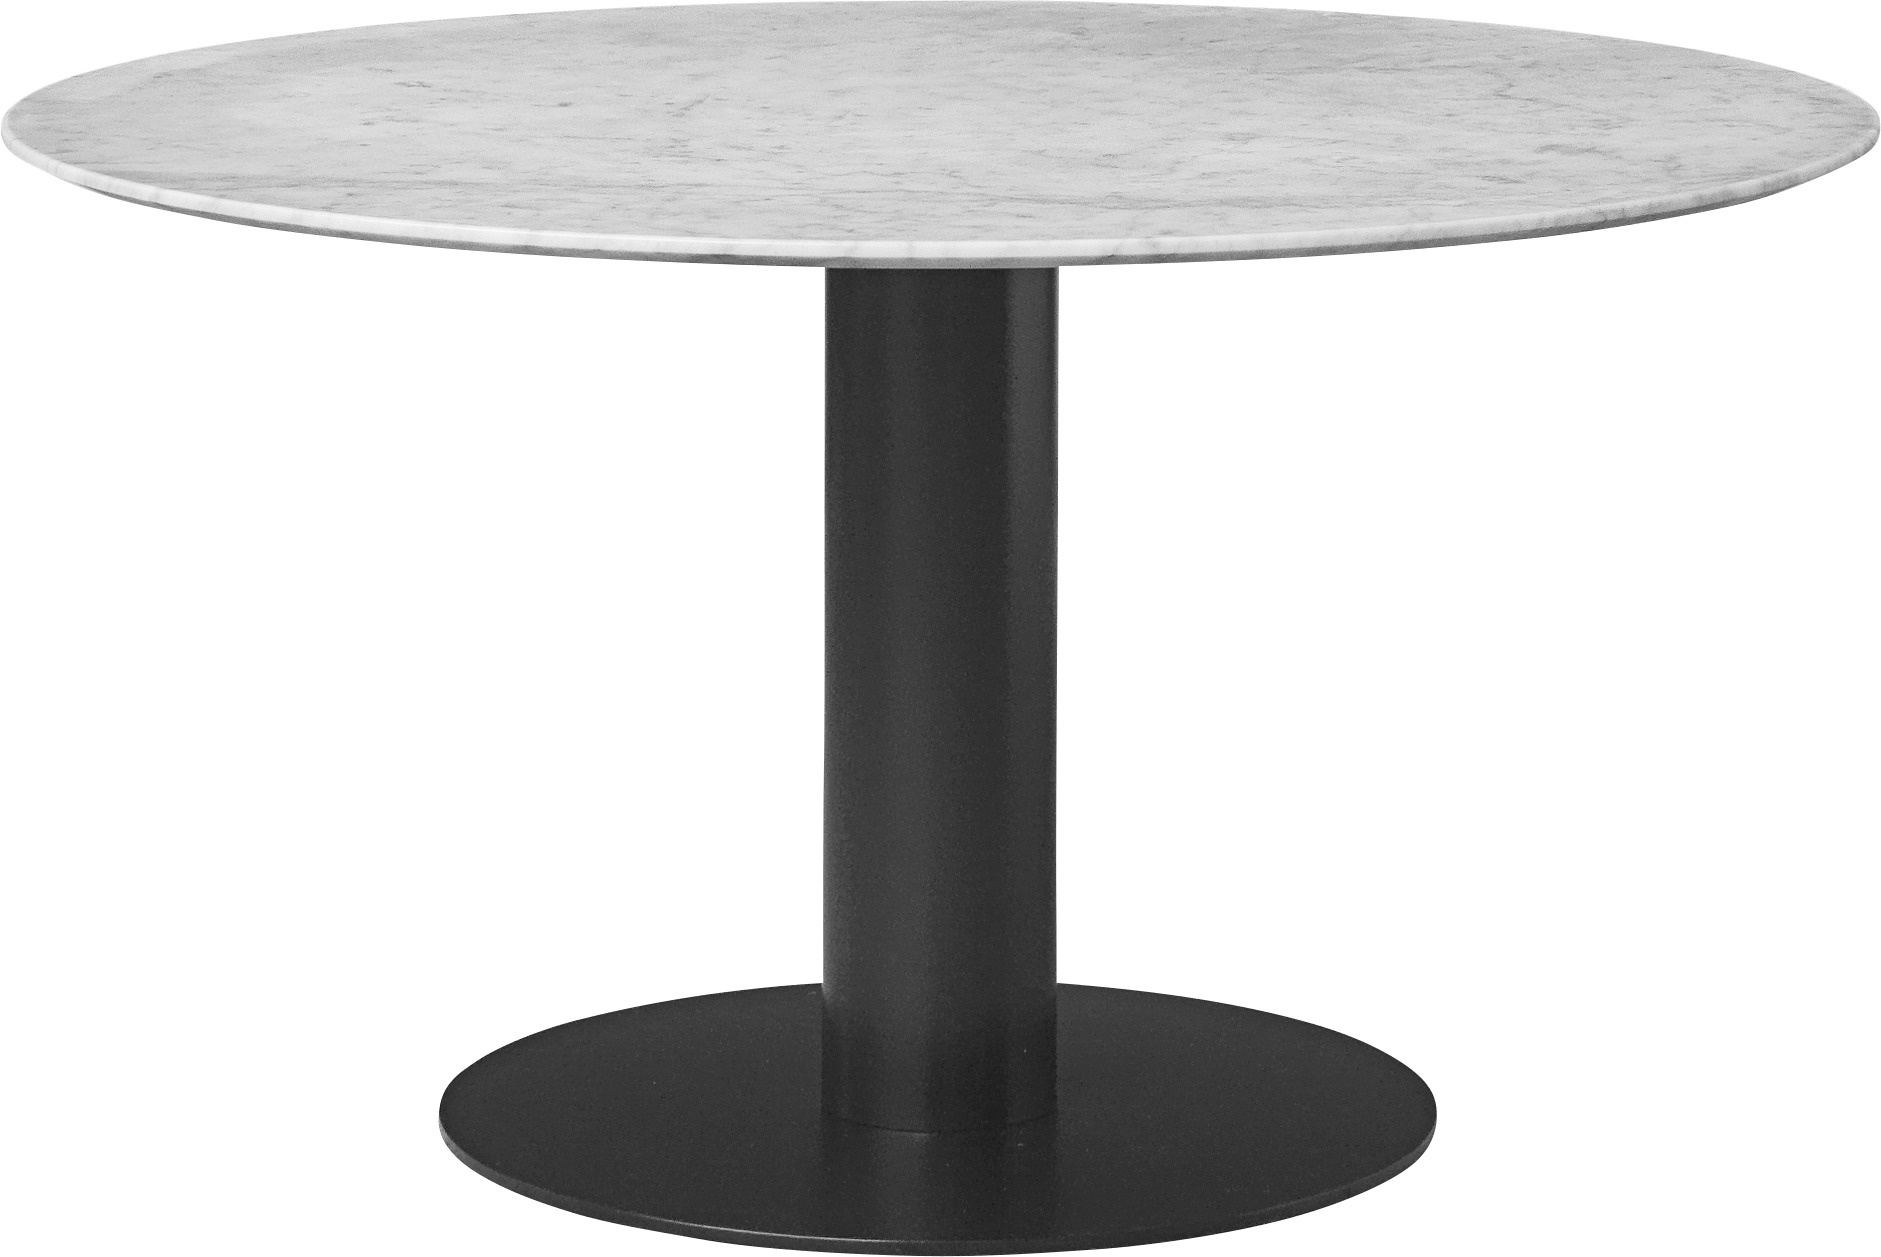 Round 0 2 2. Gubi Dining Table - Round. Стол обеденный gubi Moon Dining Table ø 1200. Обеденный стол gubi 2.0. Gubi столик.